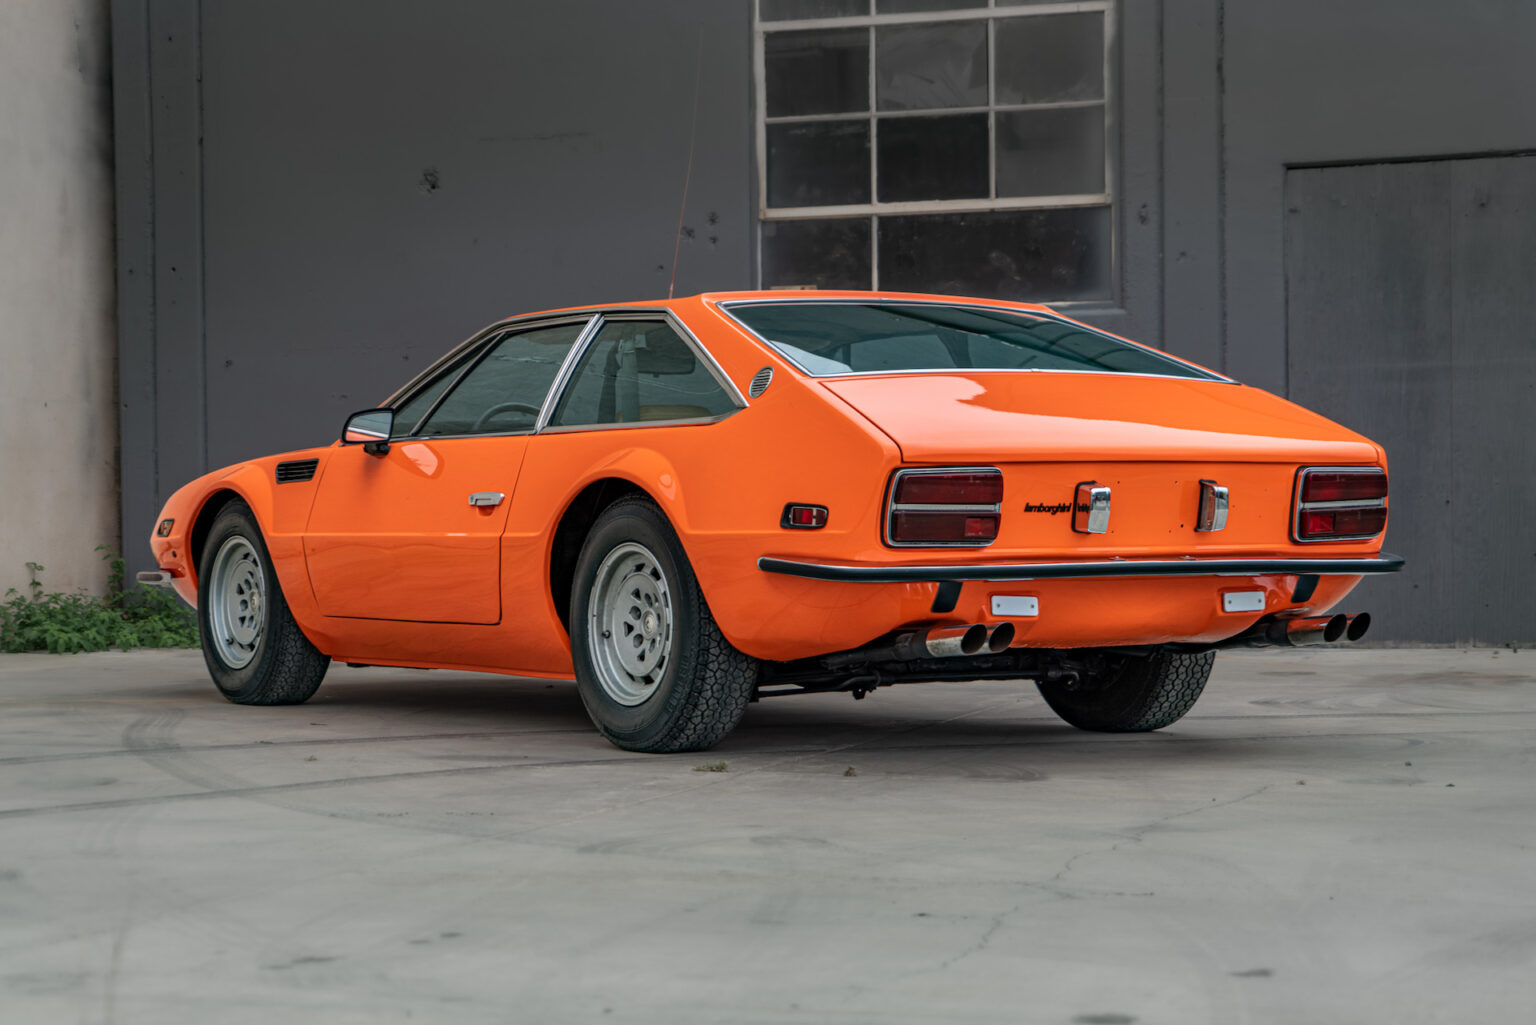 Lamborghini - 60 ans d'exotisme  1975-Lamborghini-Jarama-00005-1536x1025